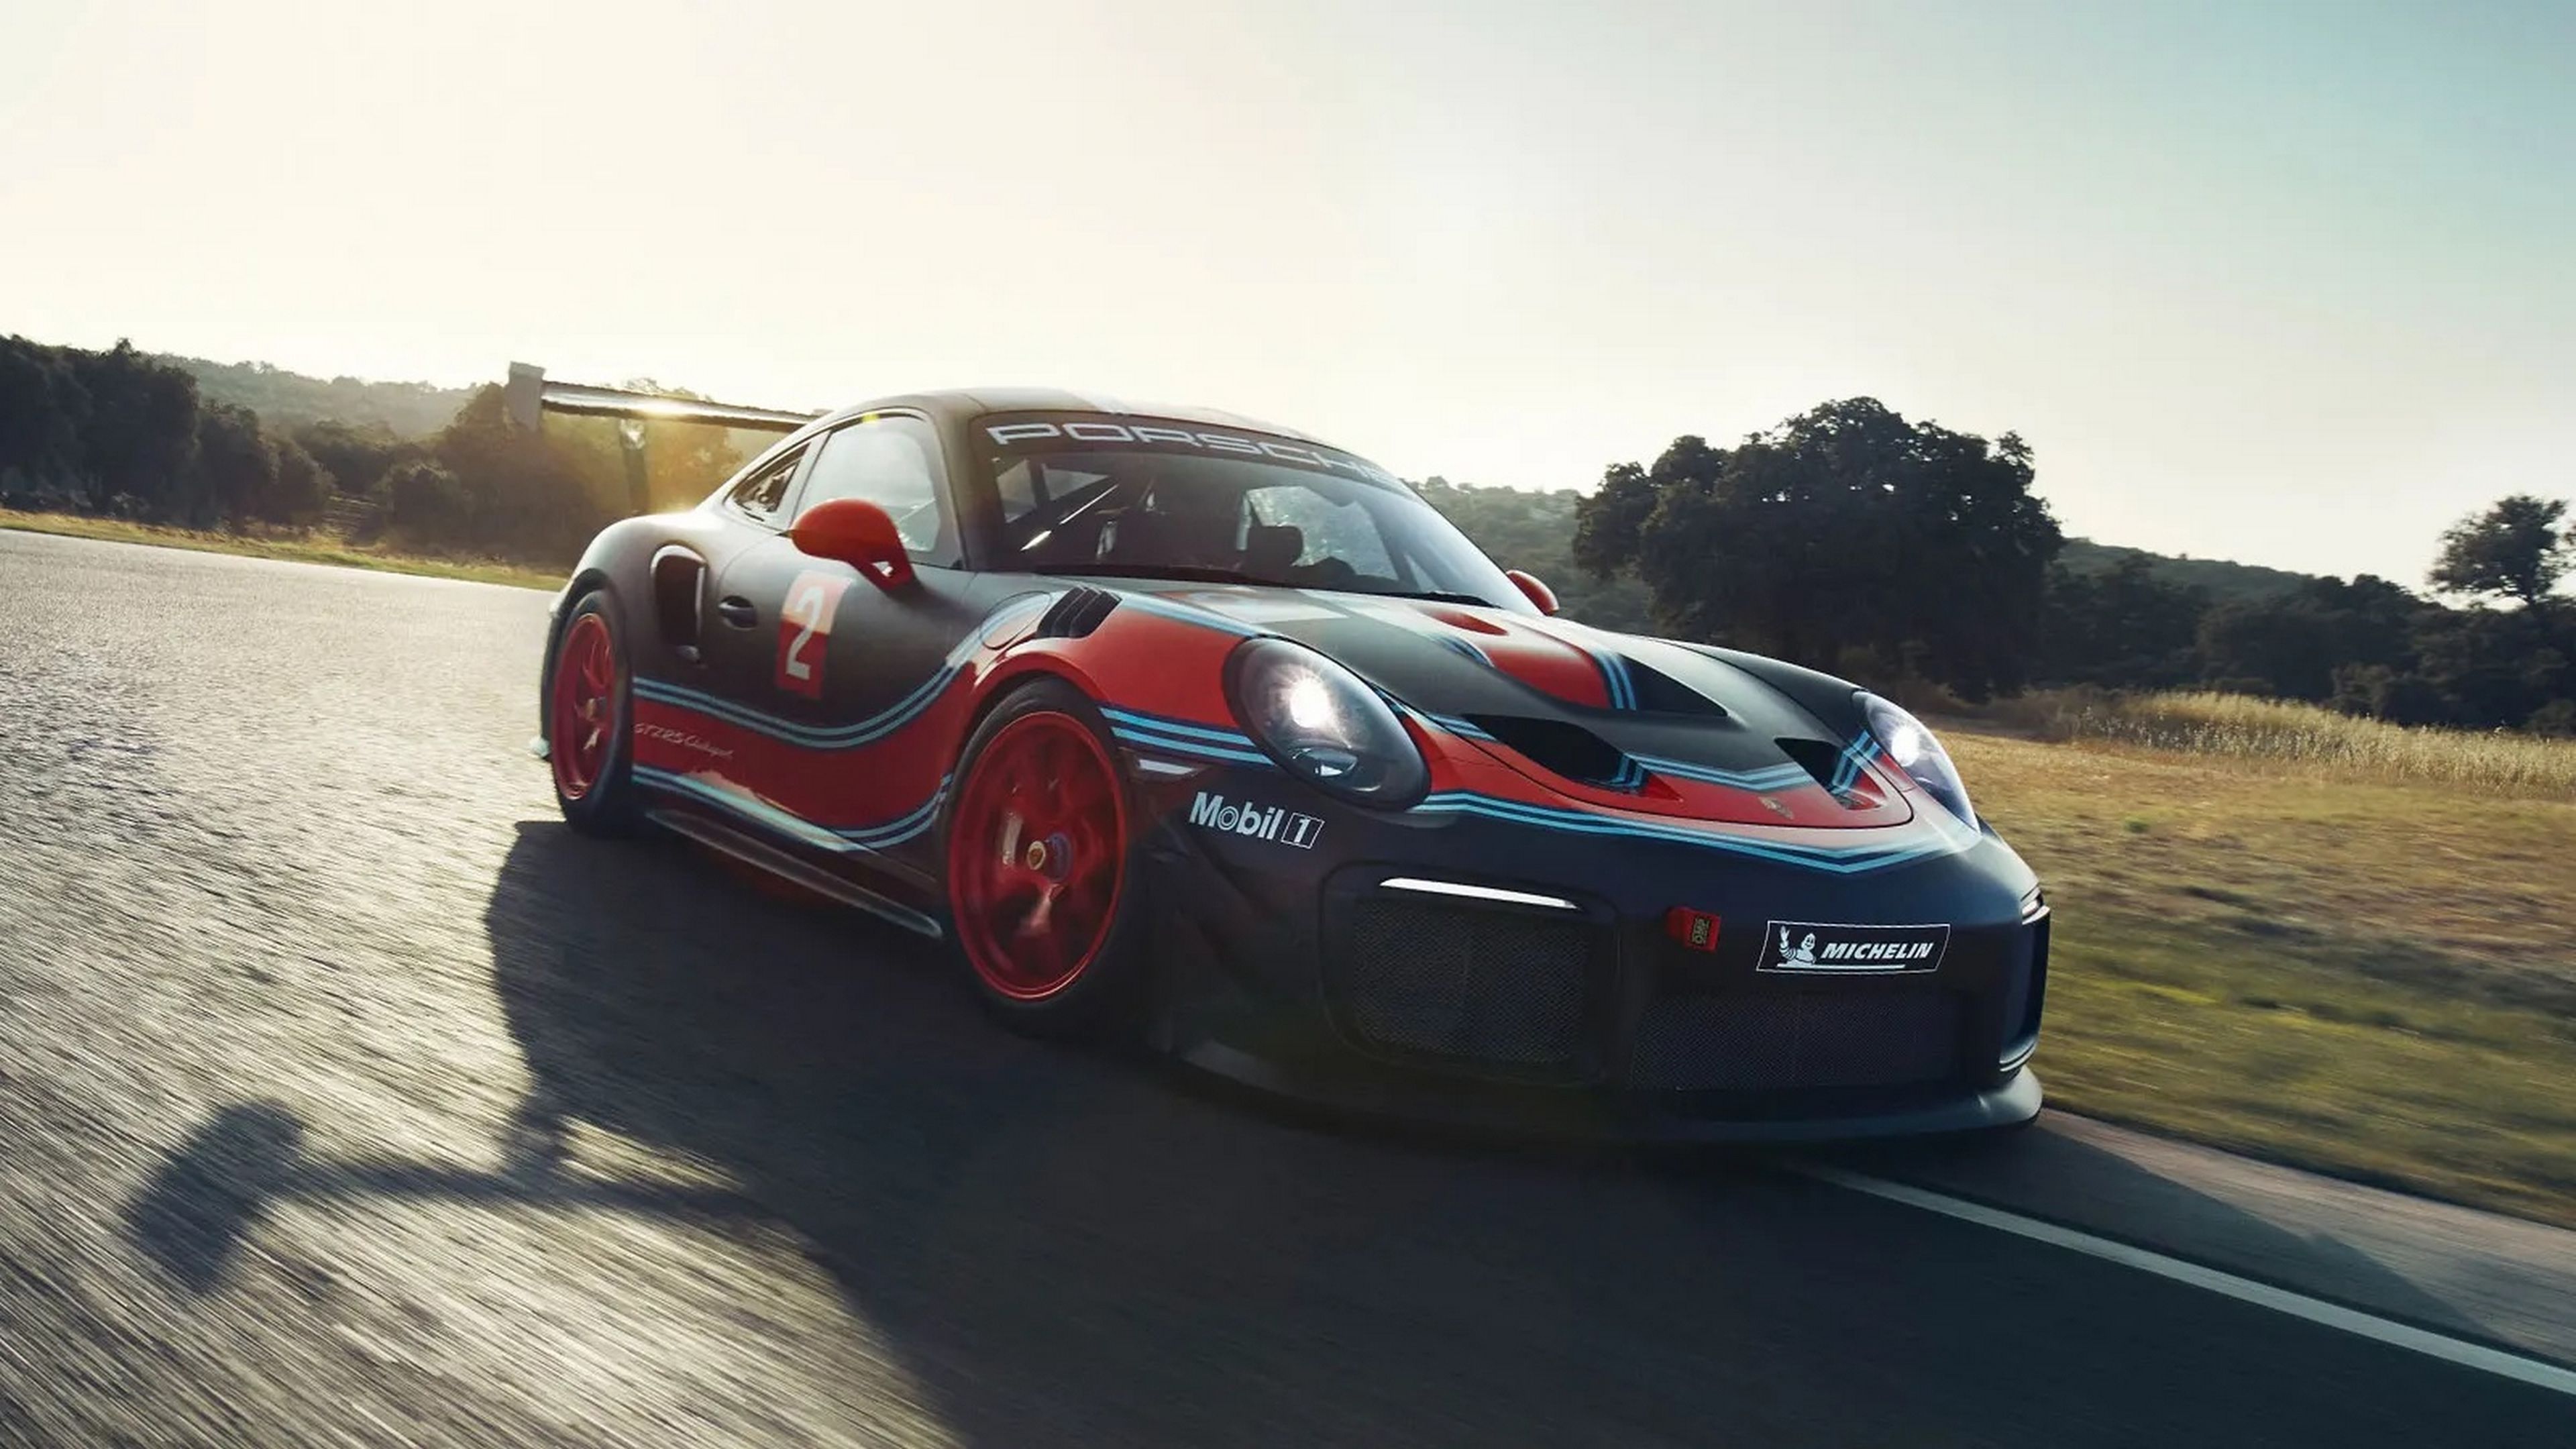 Unos pistones impresos en 3D aumentan un 10% la potencia del Porsche 911 GT2 RS